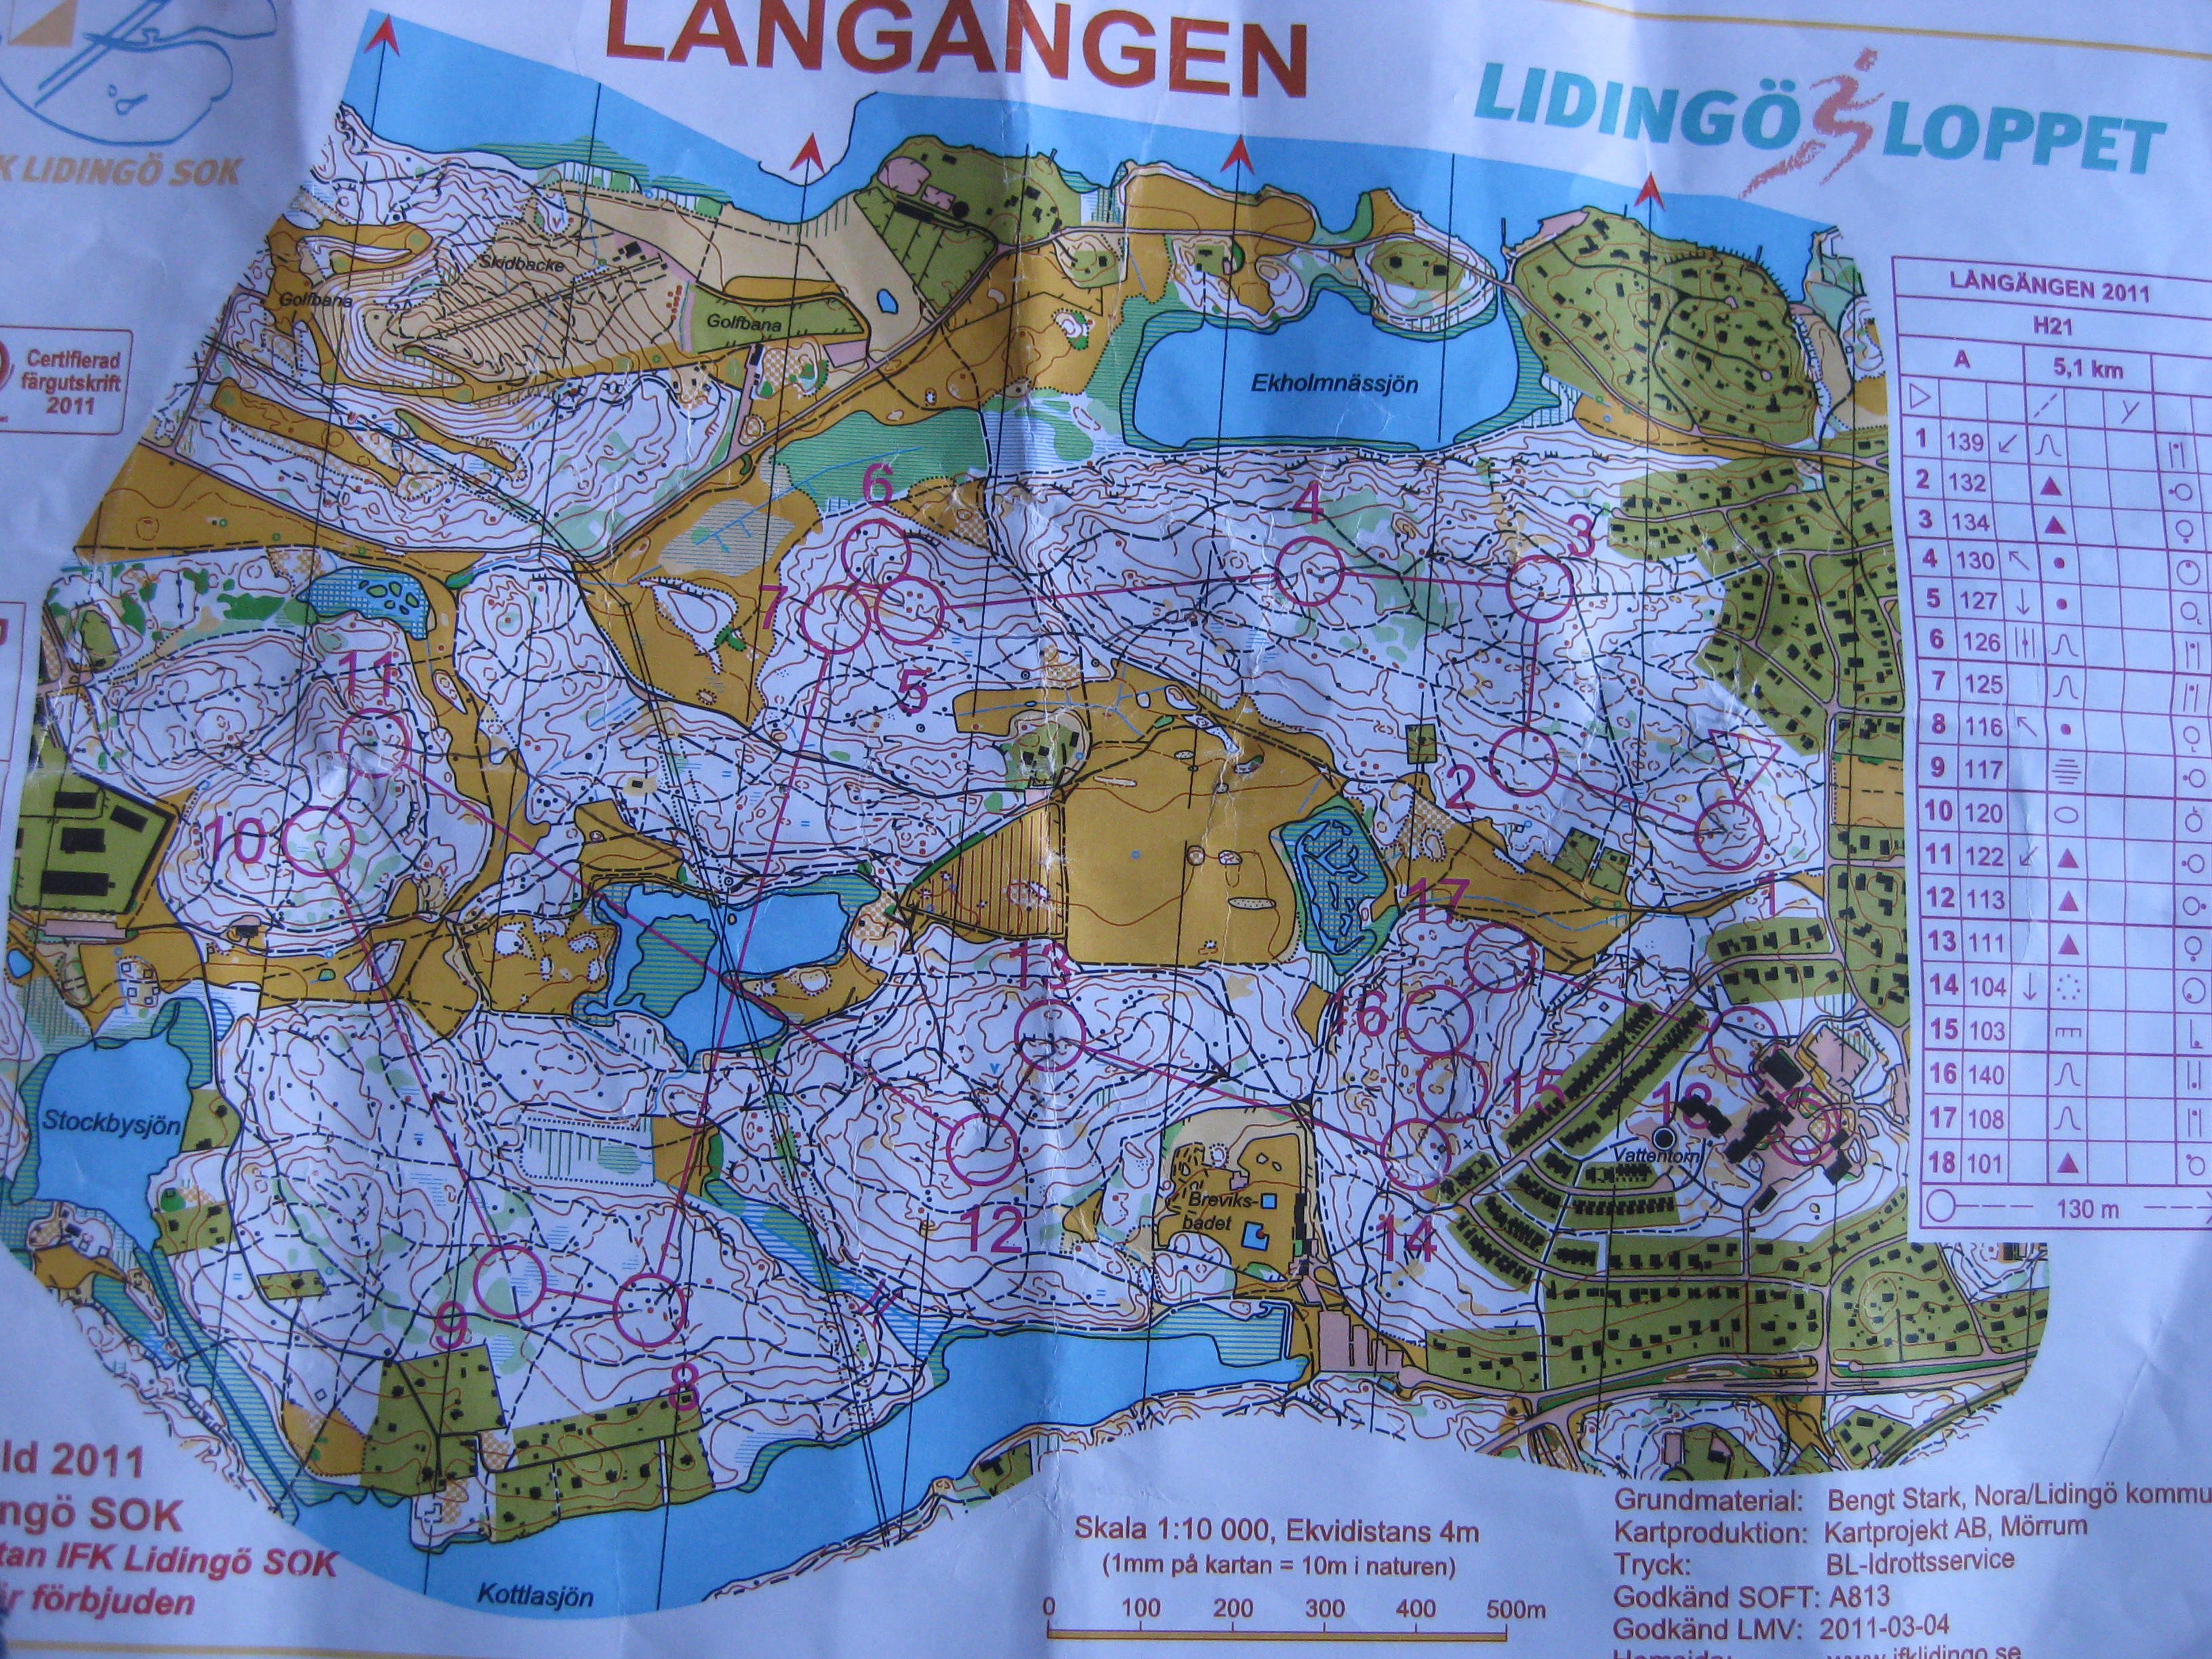 Lidingö (03/04/2011)